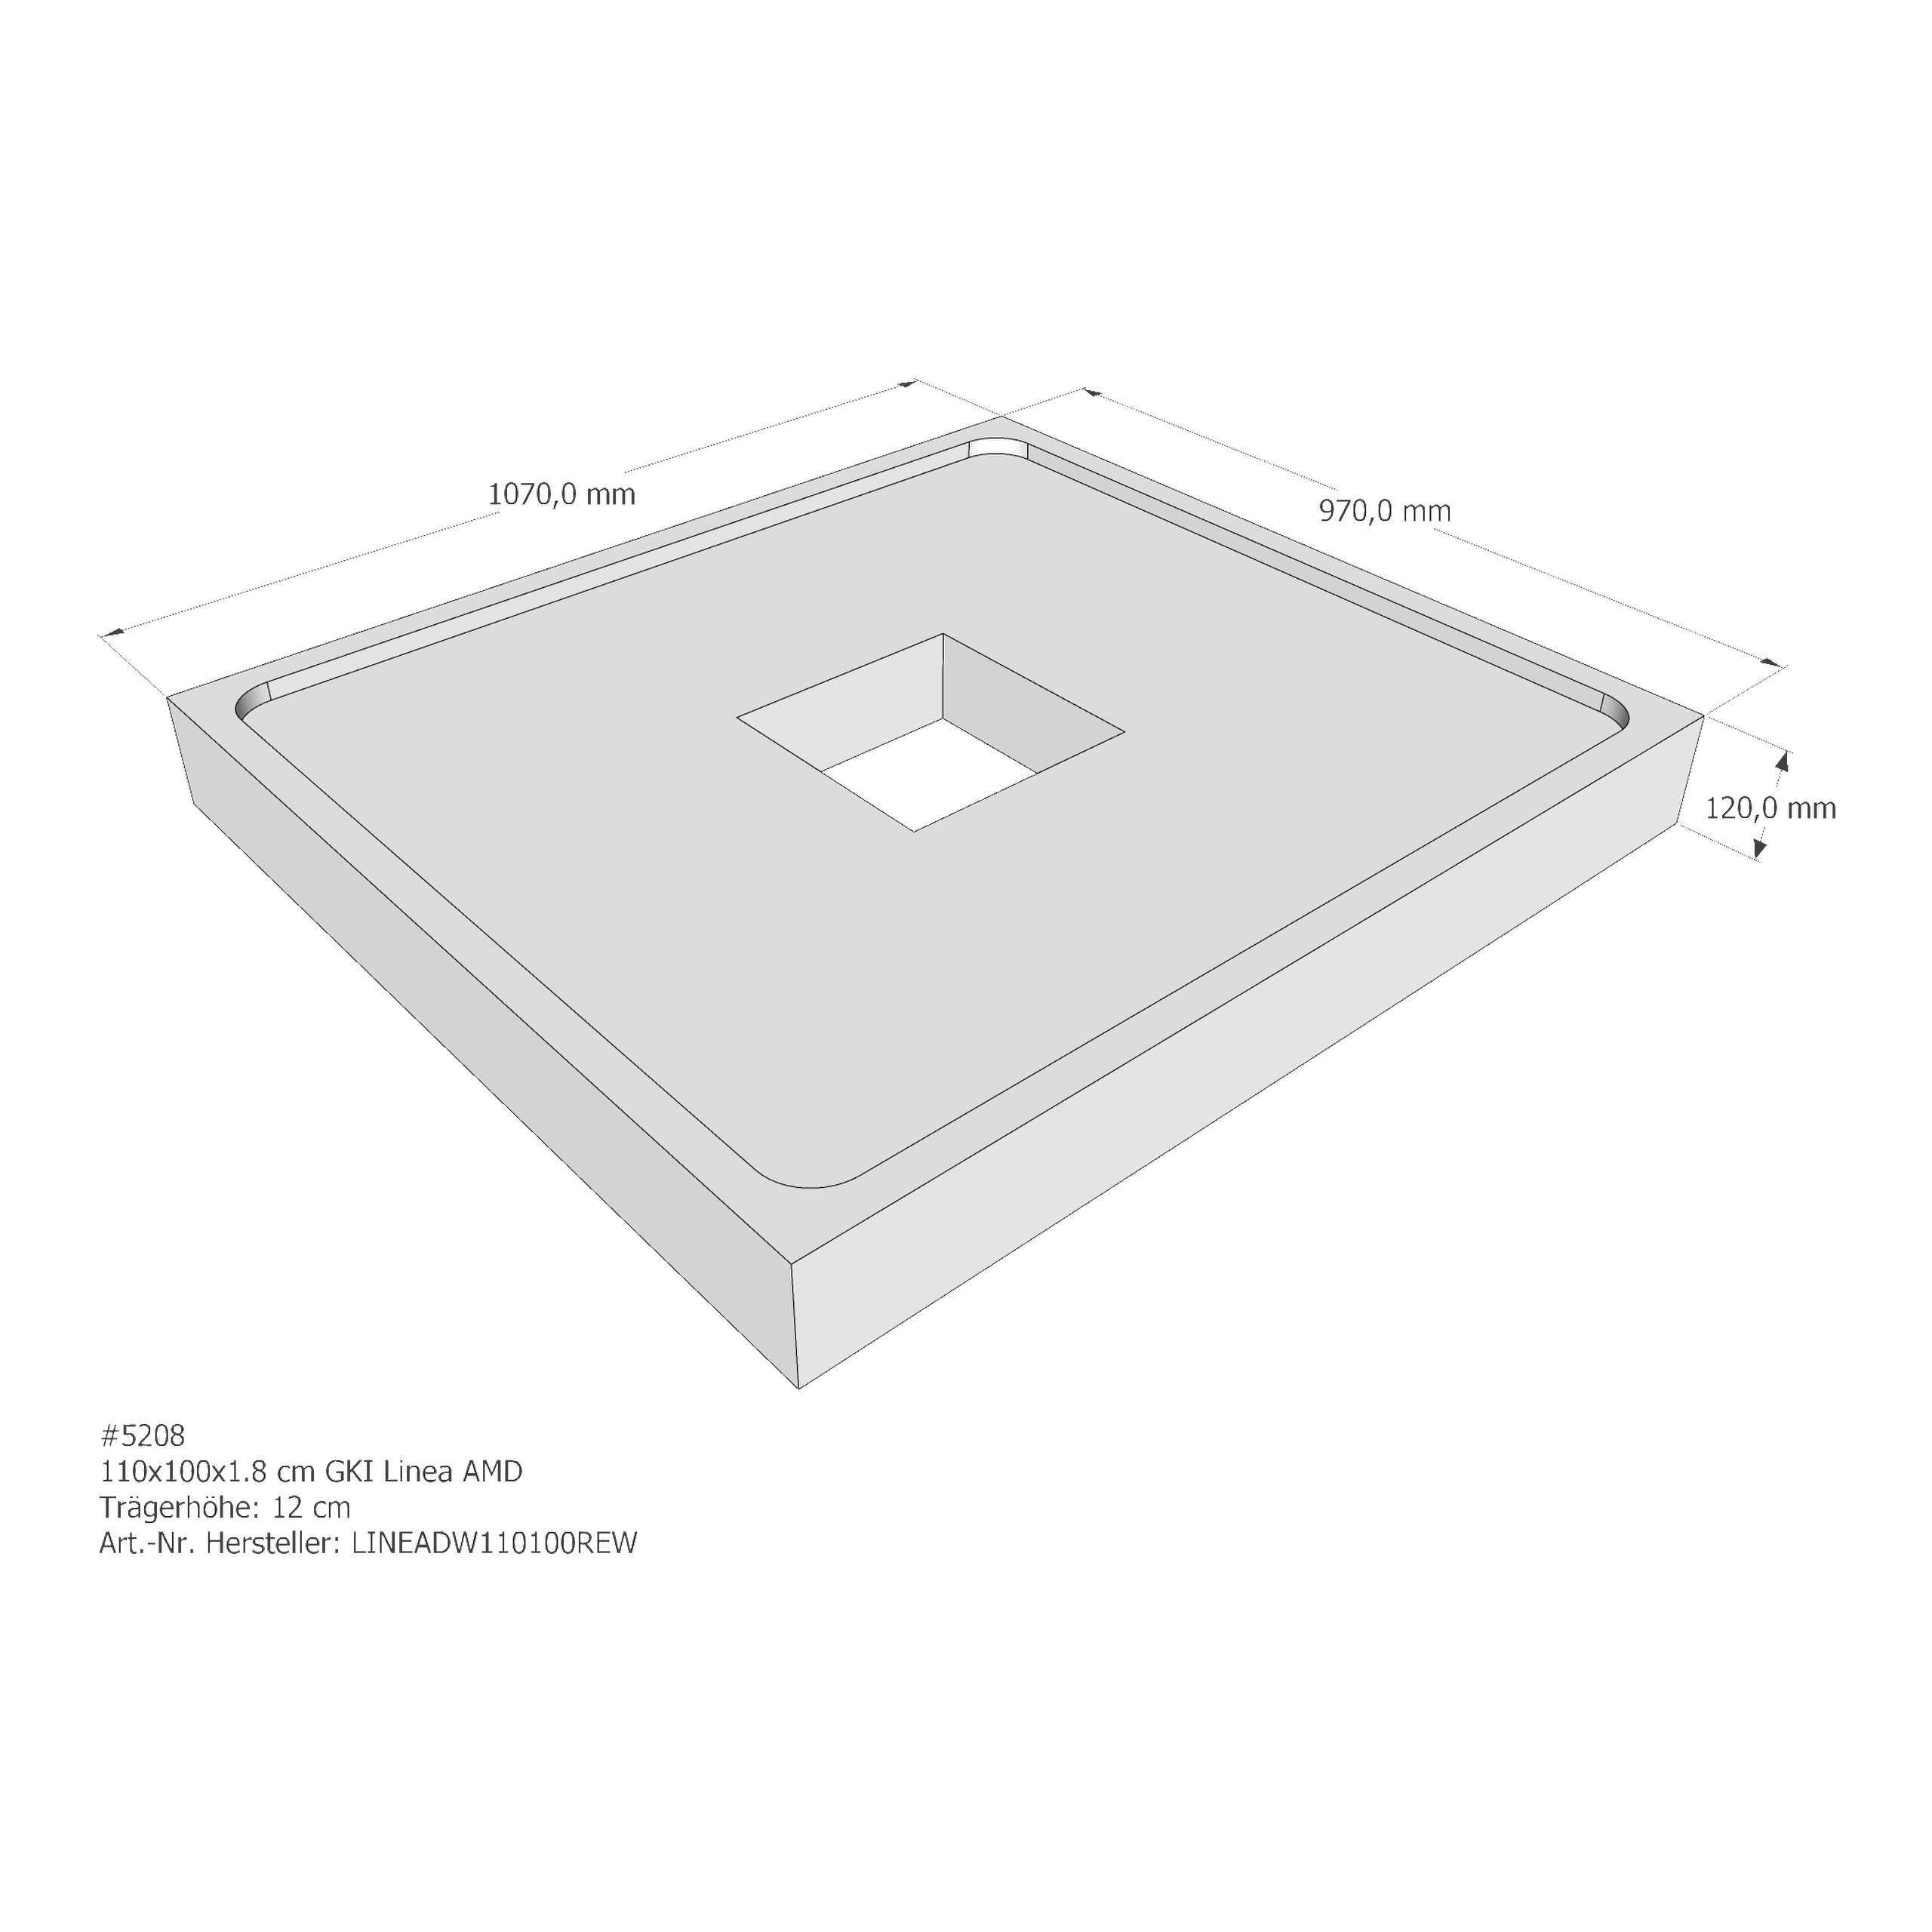 Duschwannenträger für GKI Linea 110 × 100 × 1,8 cm